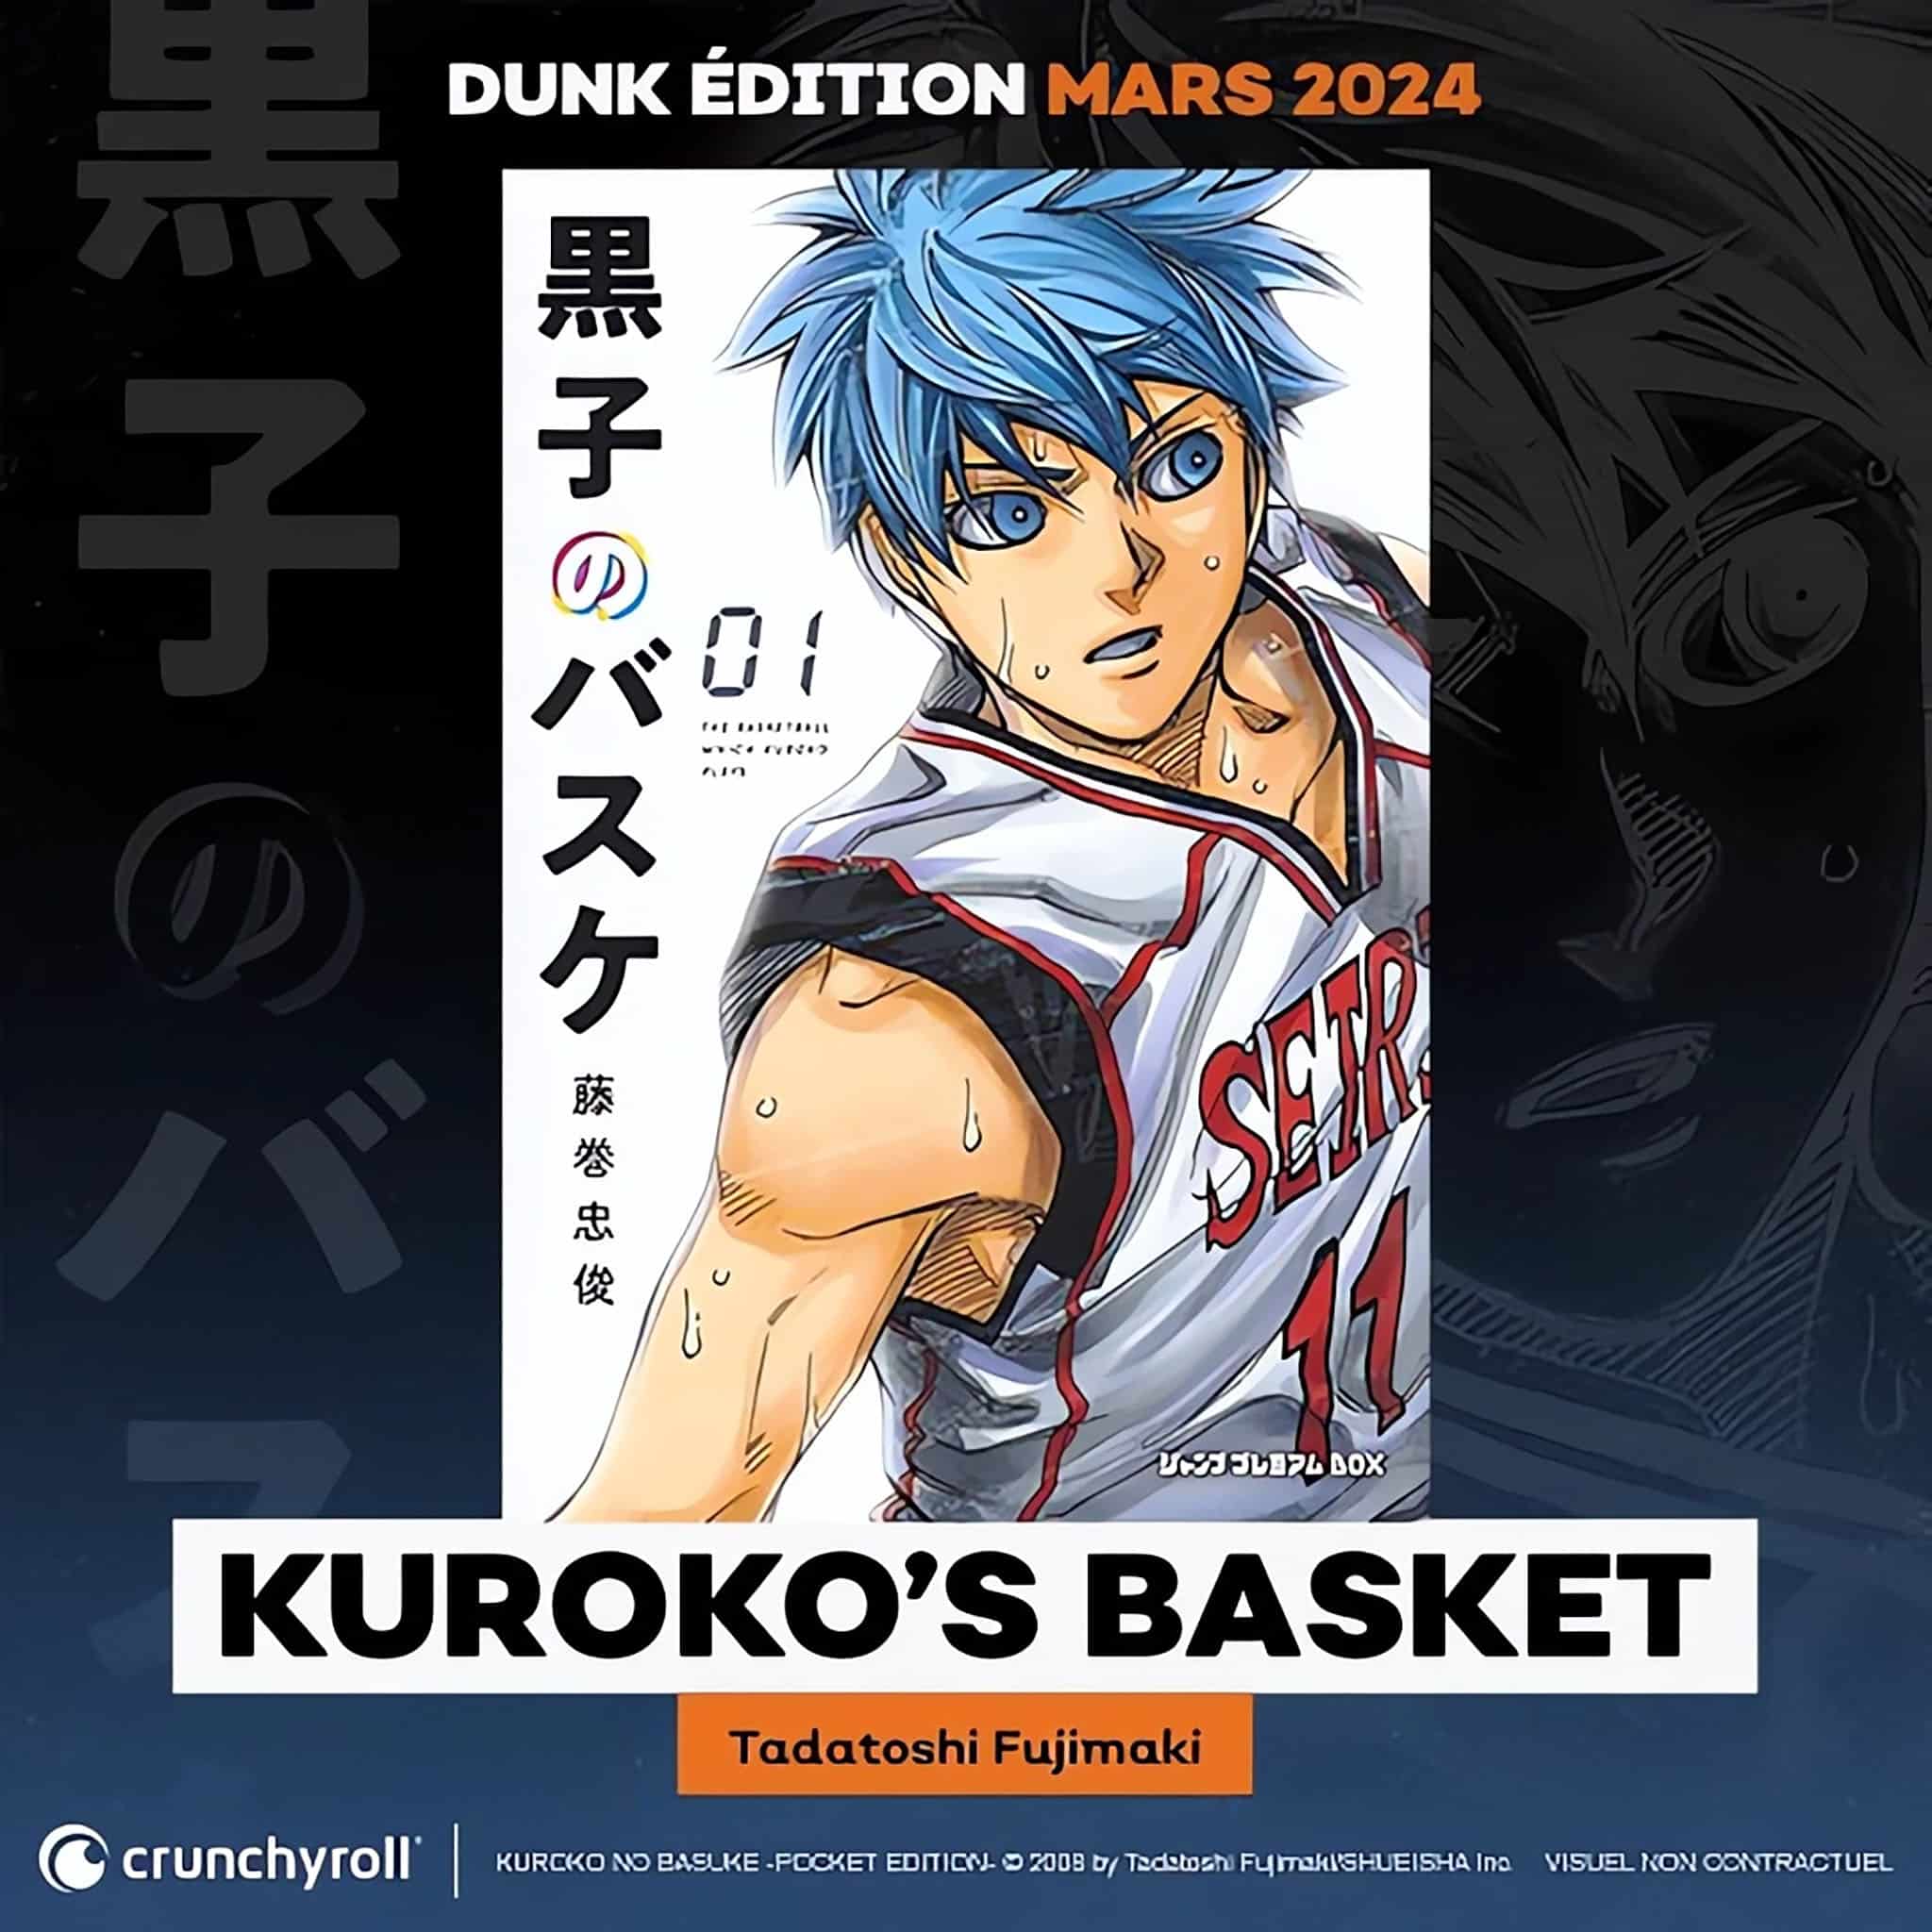 Annonce de la parution en France du manga Kuroko's Basket Dunk Édition chez Crunchyroll